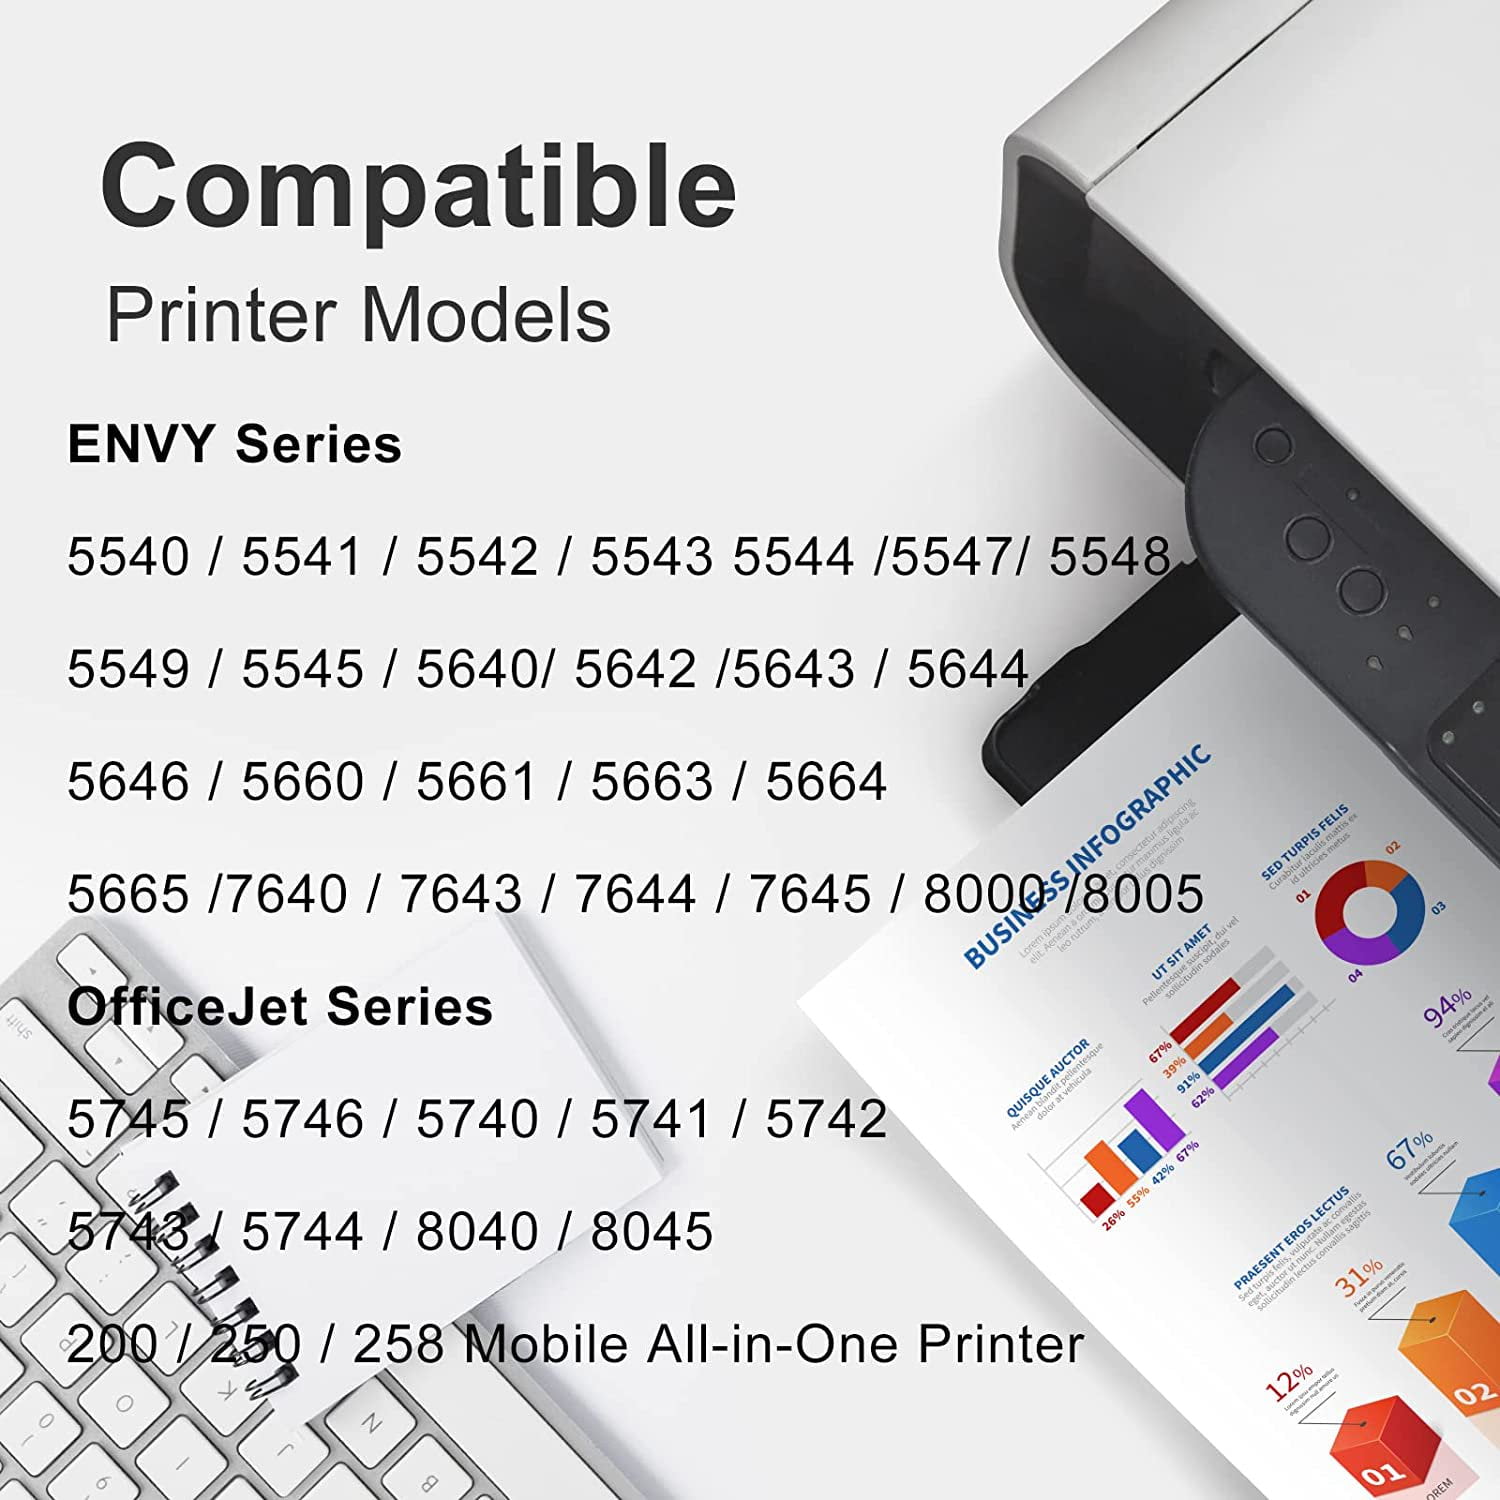 HP 62 Cartouche d'encre trois couleurs authentique (C2P06AE) pour Officejet  Mobile 250, Envy 5540/5640/7640, Officejet 5740 e